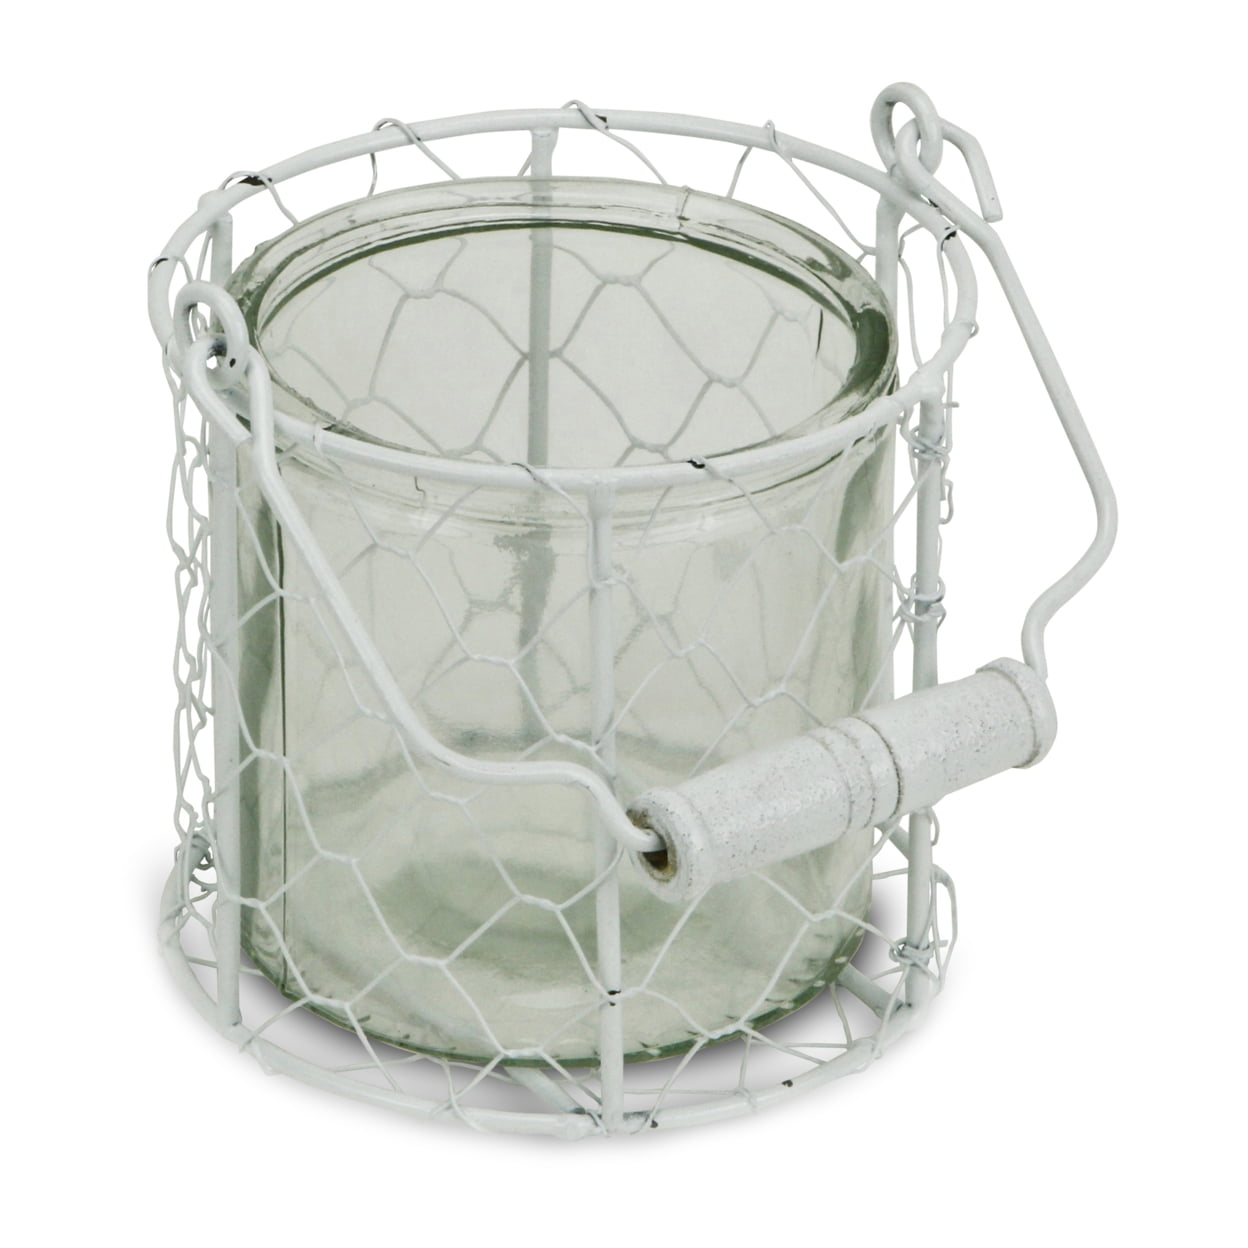 15s001wm Round Glass Jar In Wire Basket, White - Medium